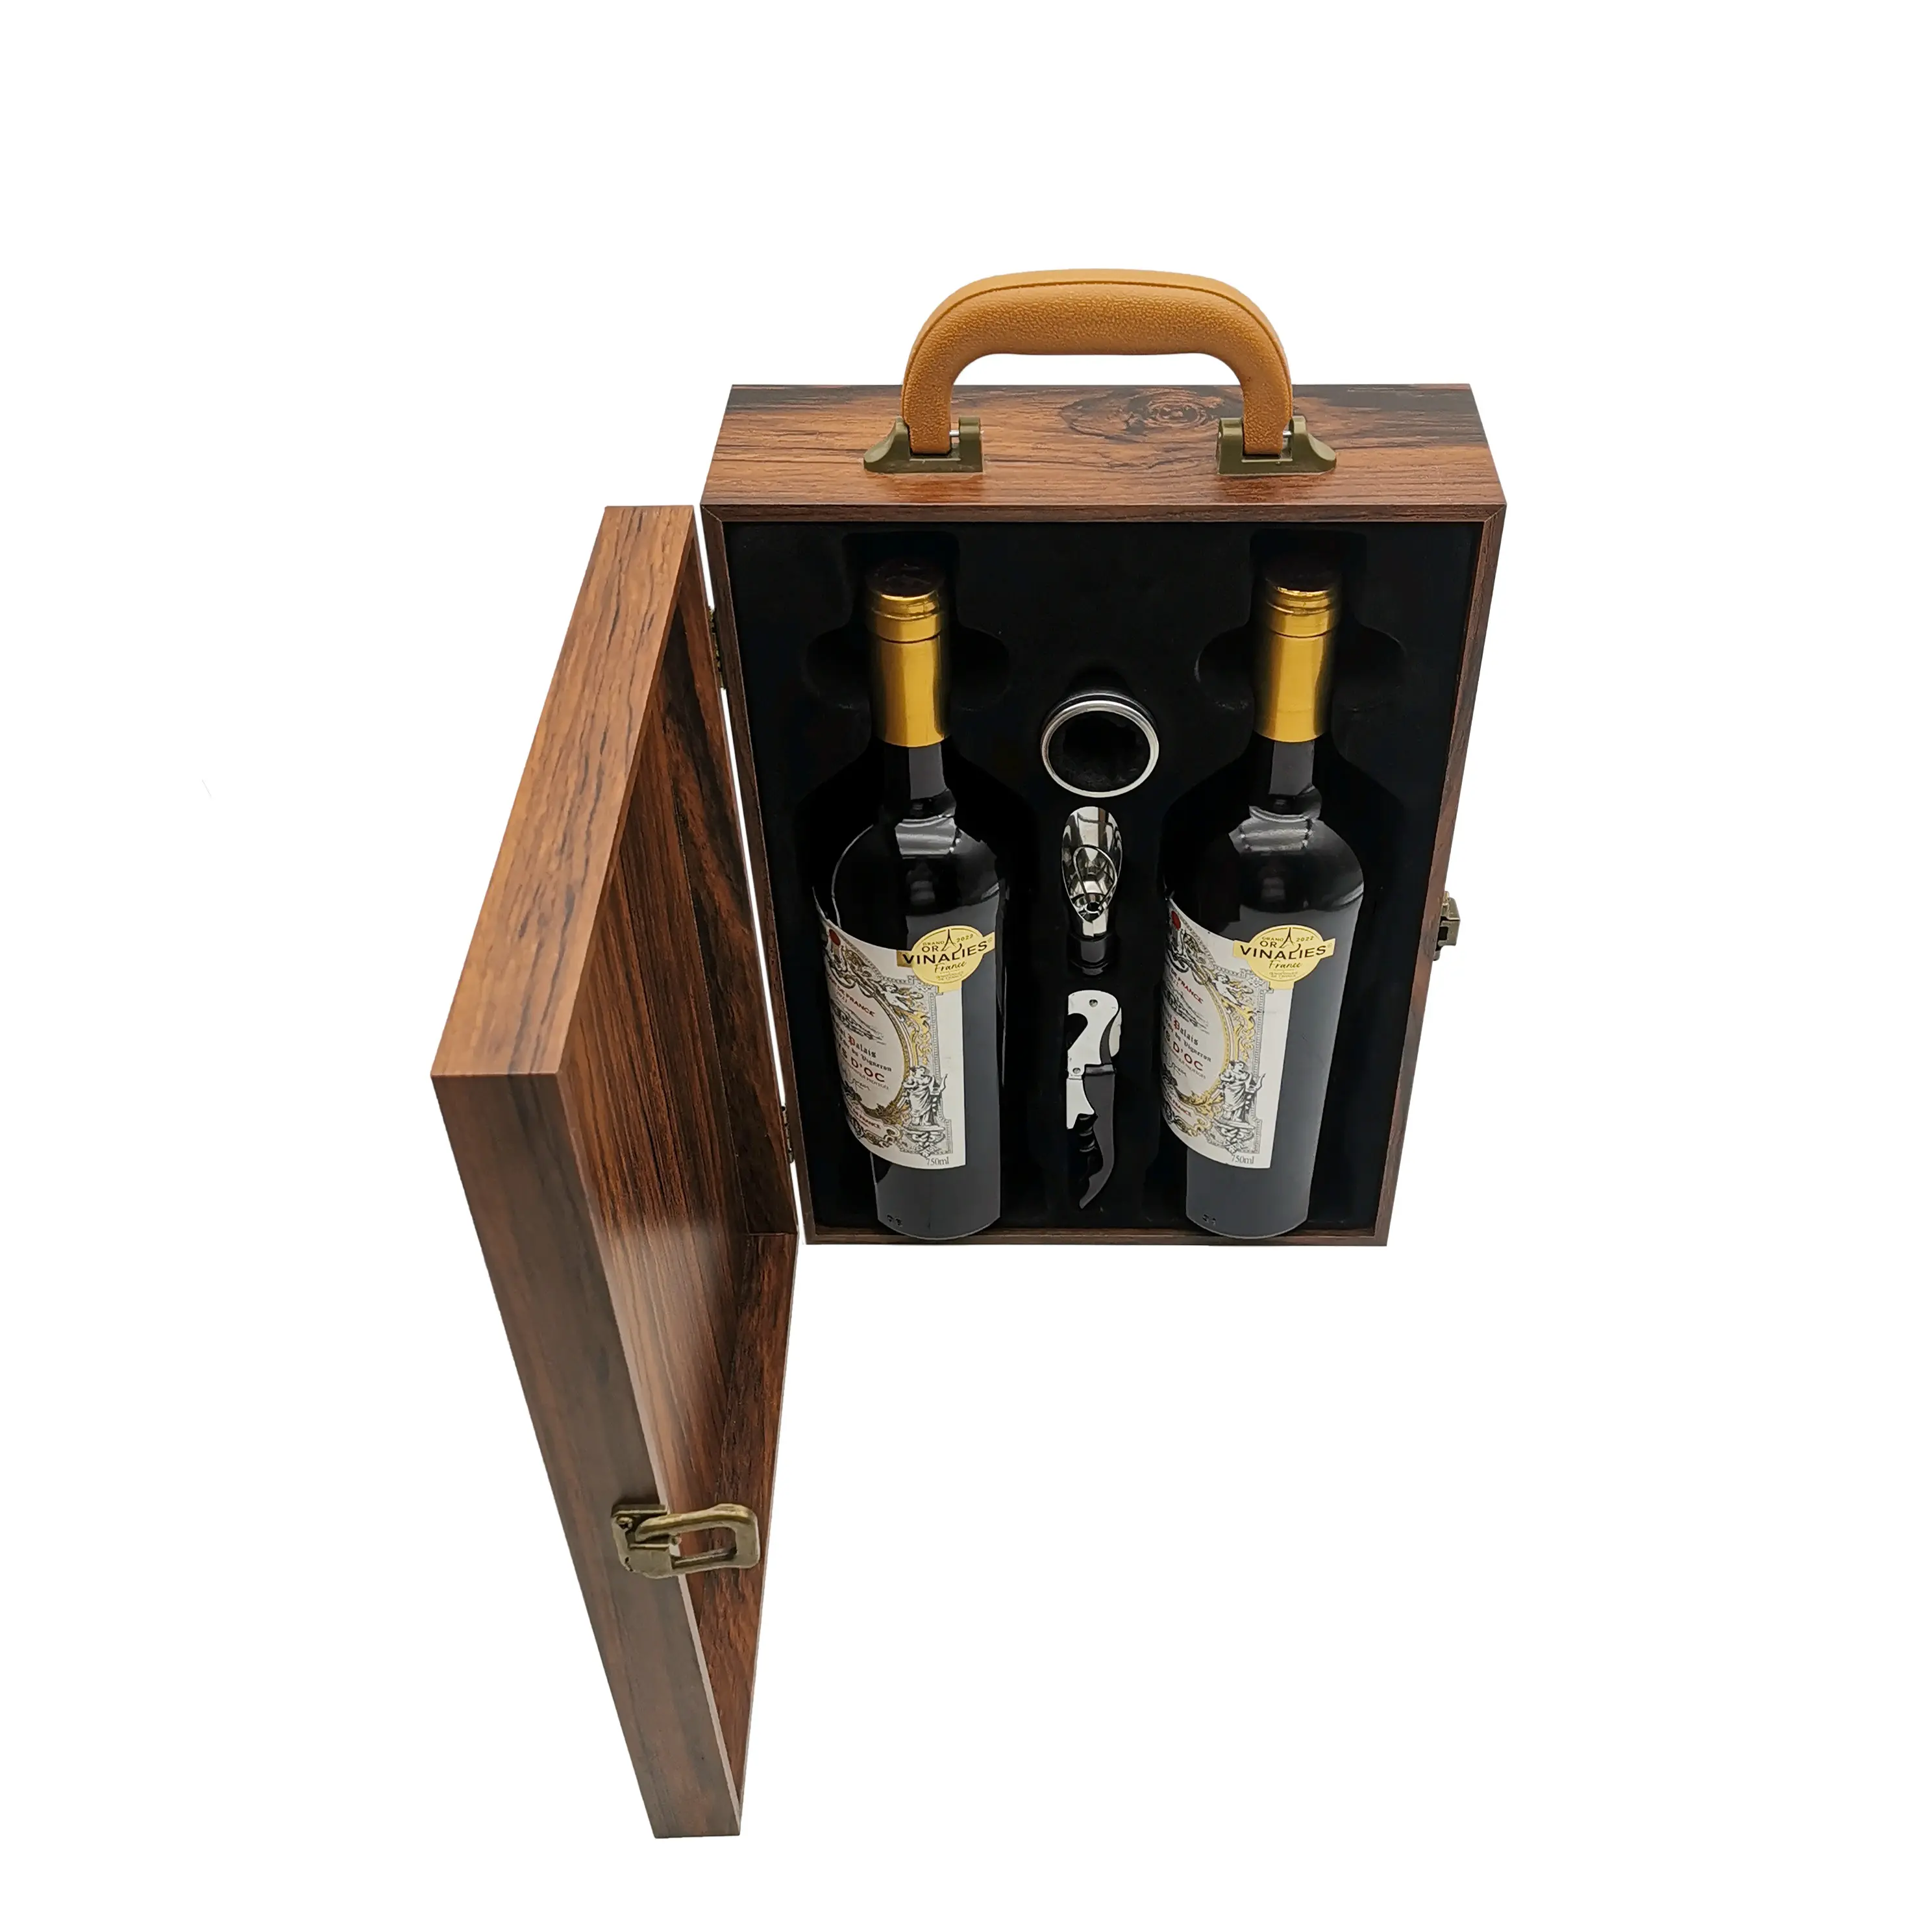 Mahagoni-Furnier doppelte Flaschen Rotwein Geschenkbox 750 ml Weinverpackungsbox Klavier lackierte Holzkiste mit Weinaccessoires